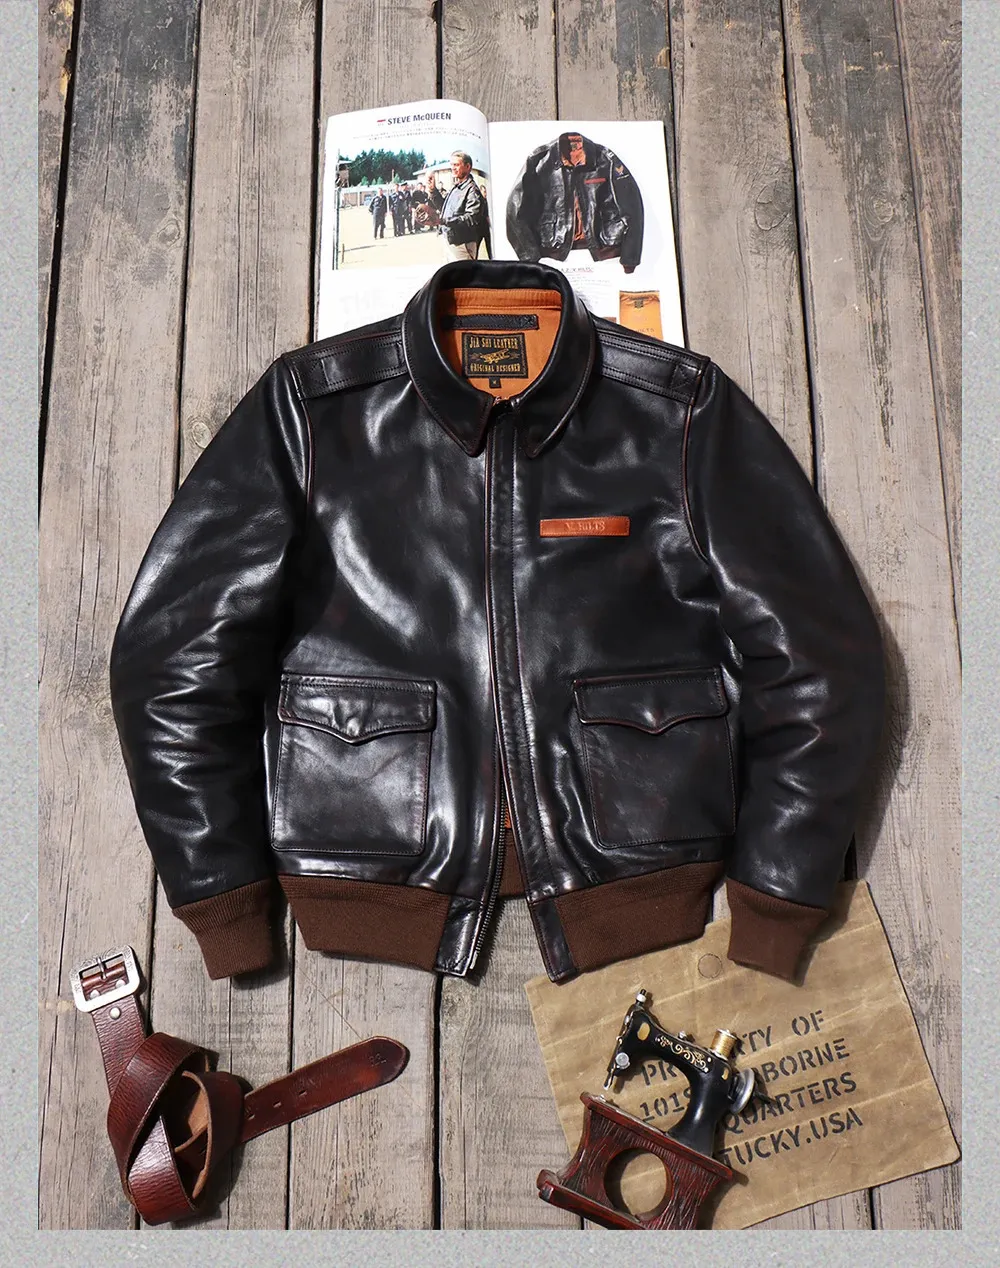 Мужская кожаная куртка из искусственной кожи YR Classic Air Force A 2, натуральная кожаная куртка Vintage Horsehide A2 Летная куртка, качественное пальто Eastman 231031